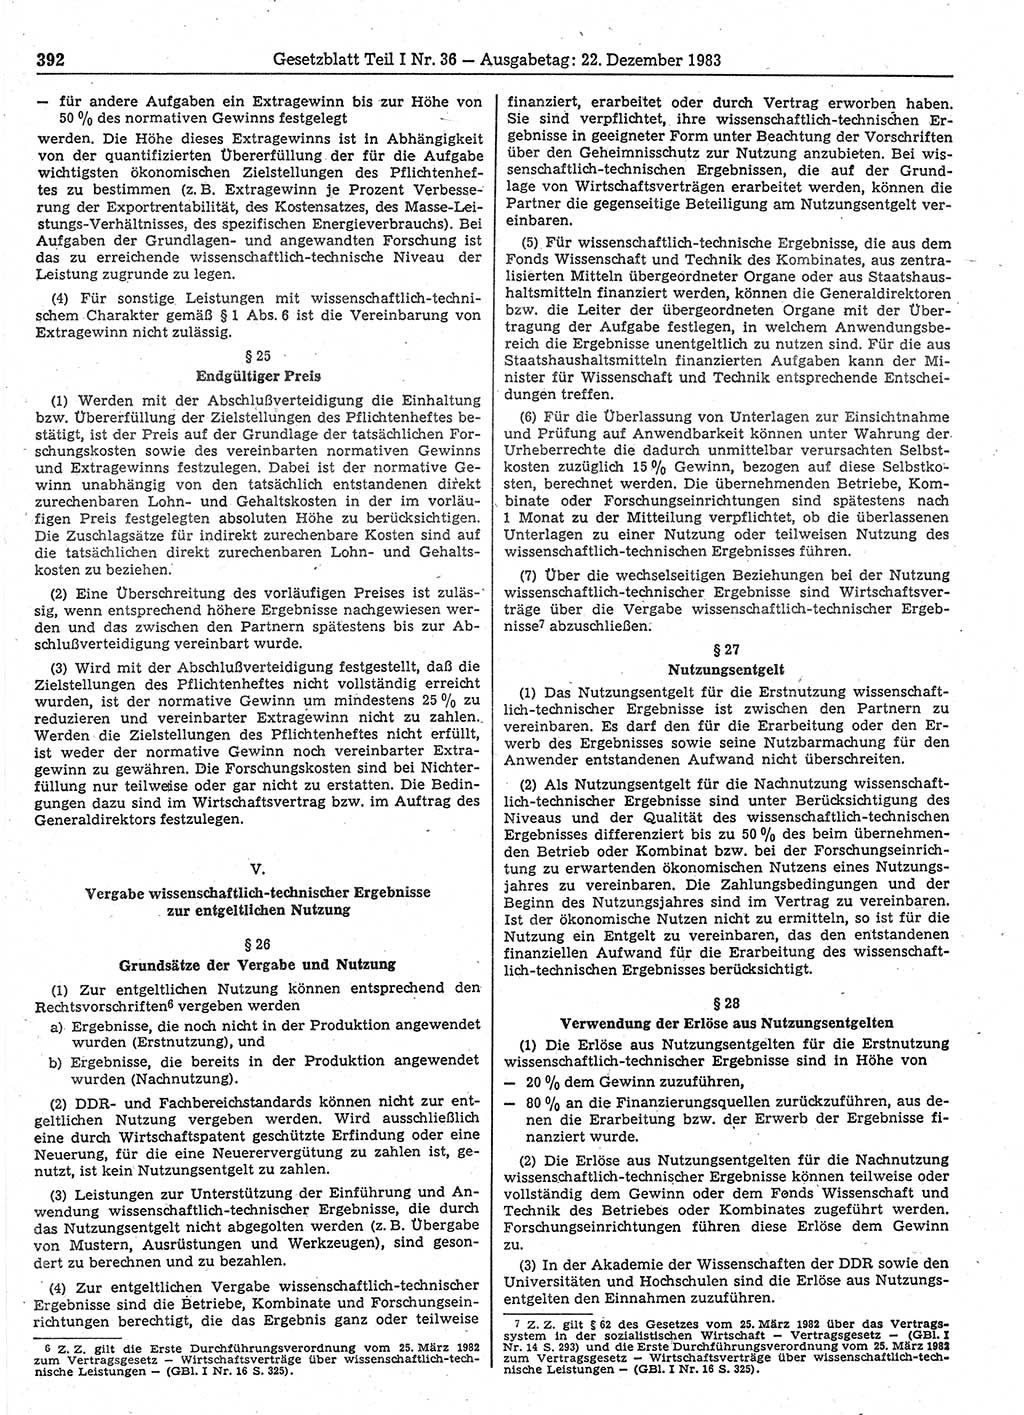 Gesetzblatt (GBl.) der Deutschen Demokratischen Republik (DDR) Teil Ⅰ 1983, Seite 392 (GBl. DDR Ⅰ 1983, S. 392)